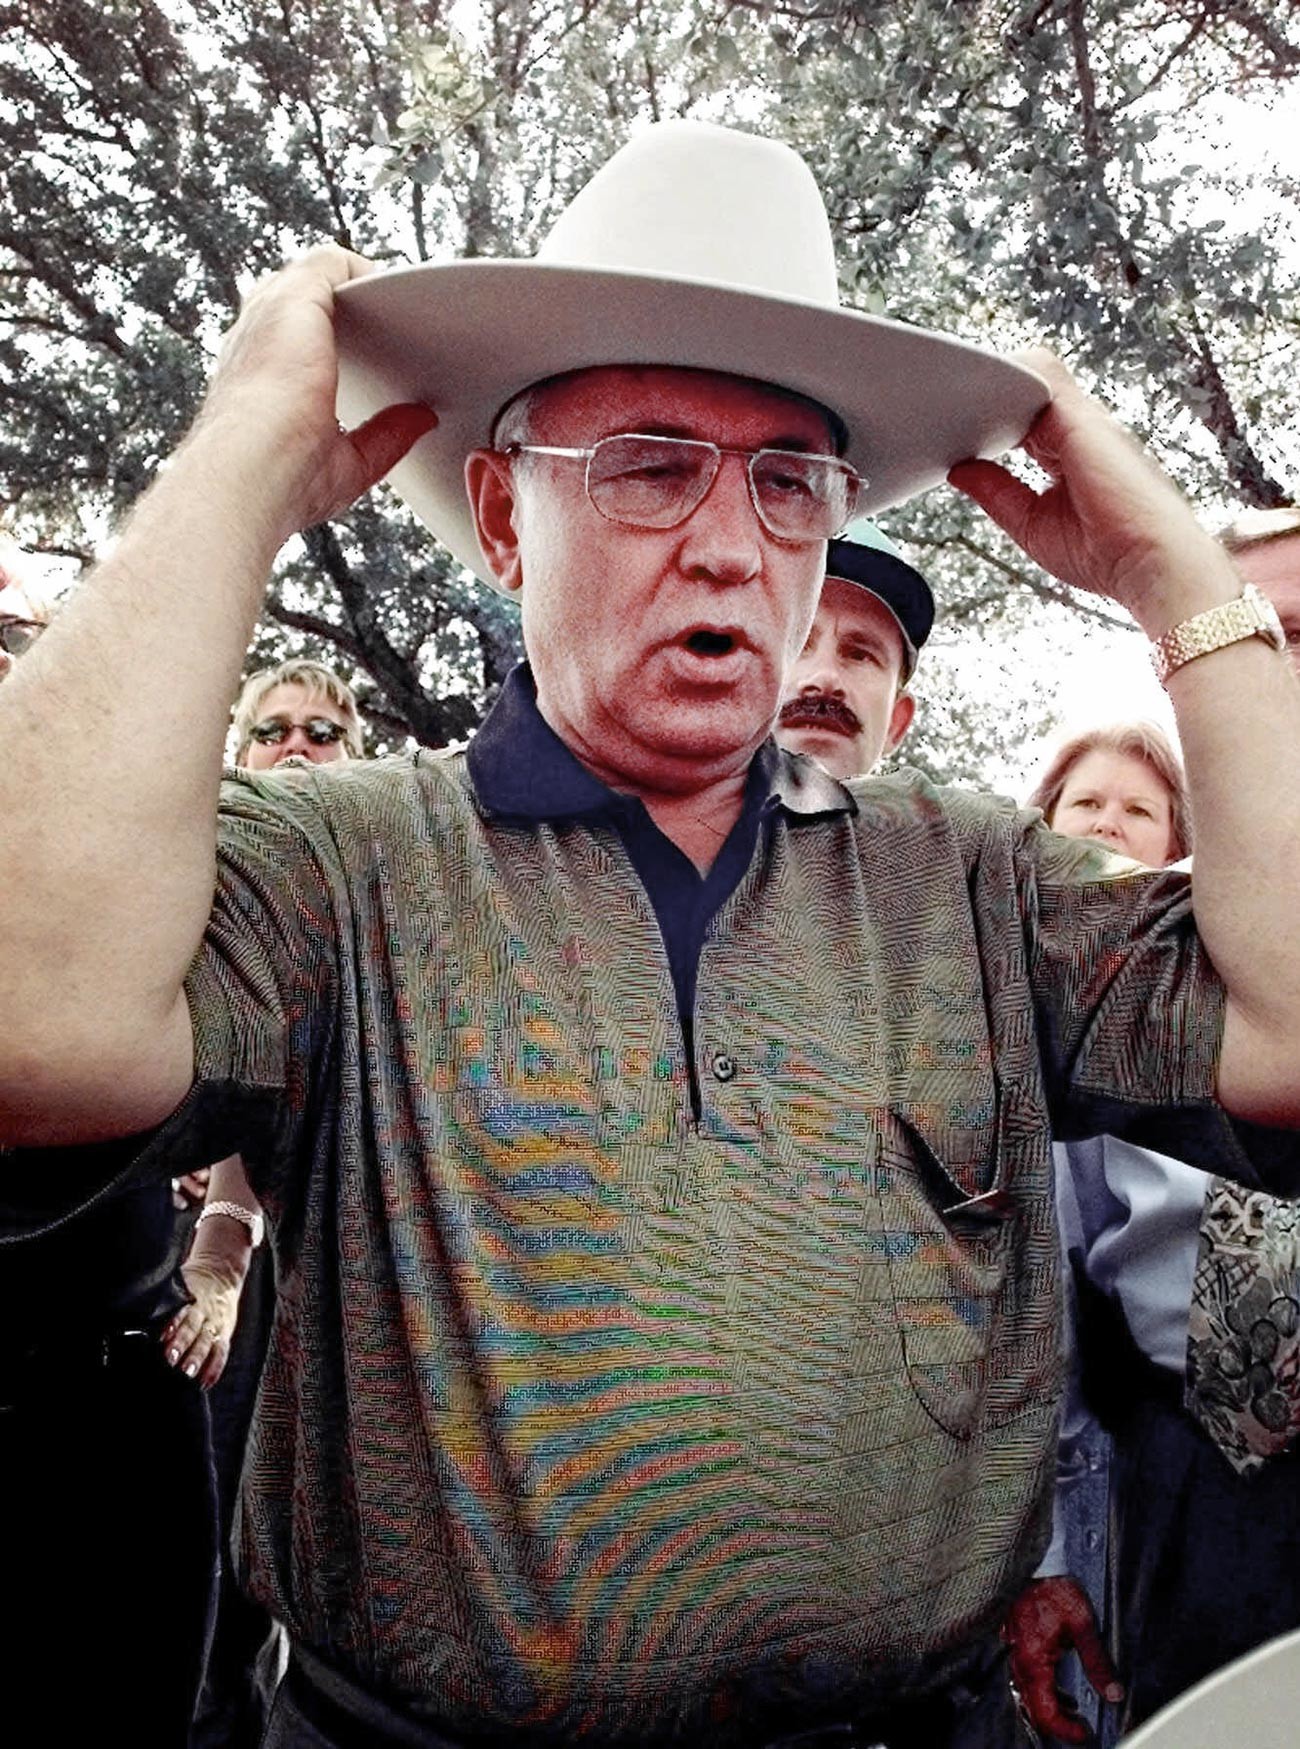 Горбачев в Техасе примеривает подаренную шляпу, 1998